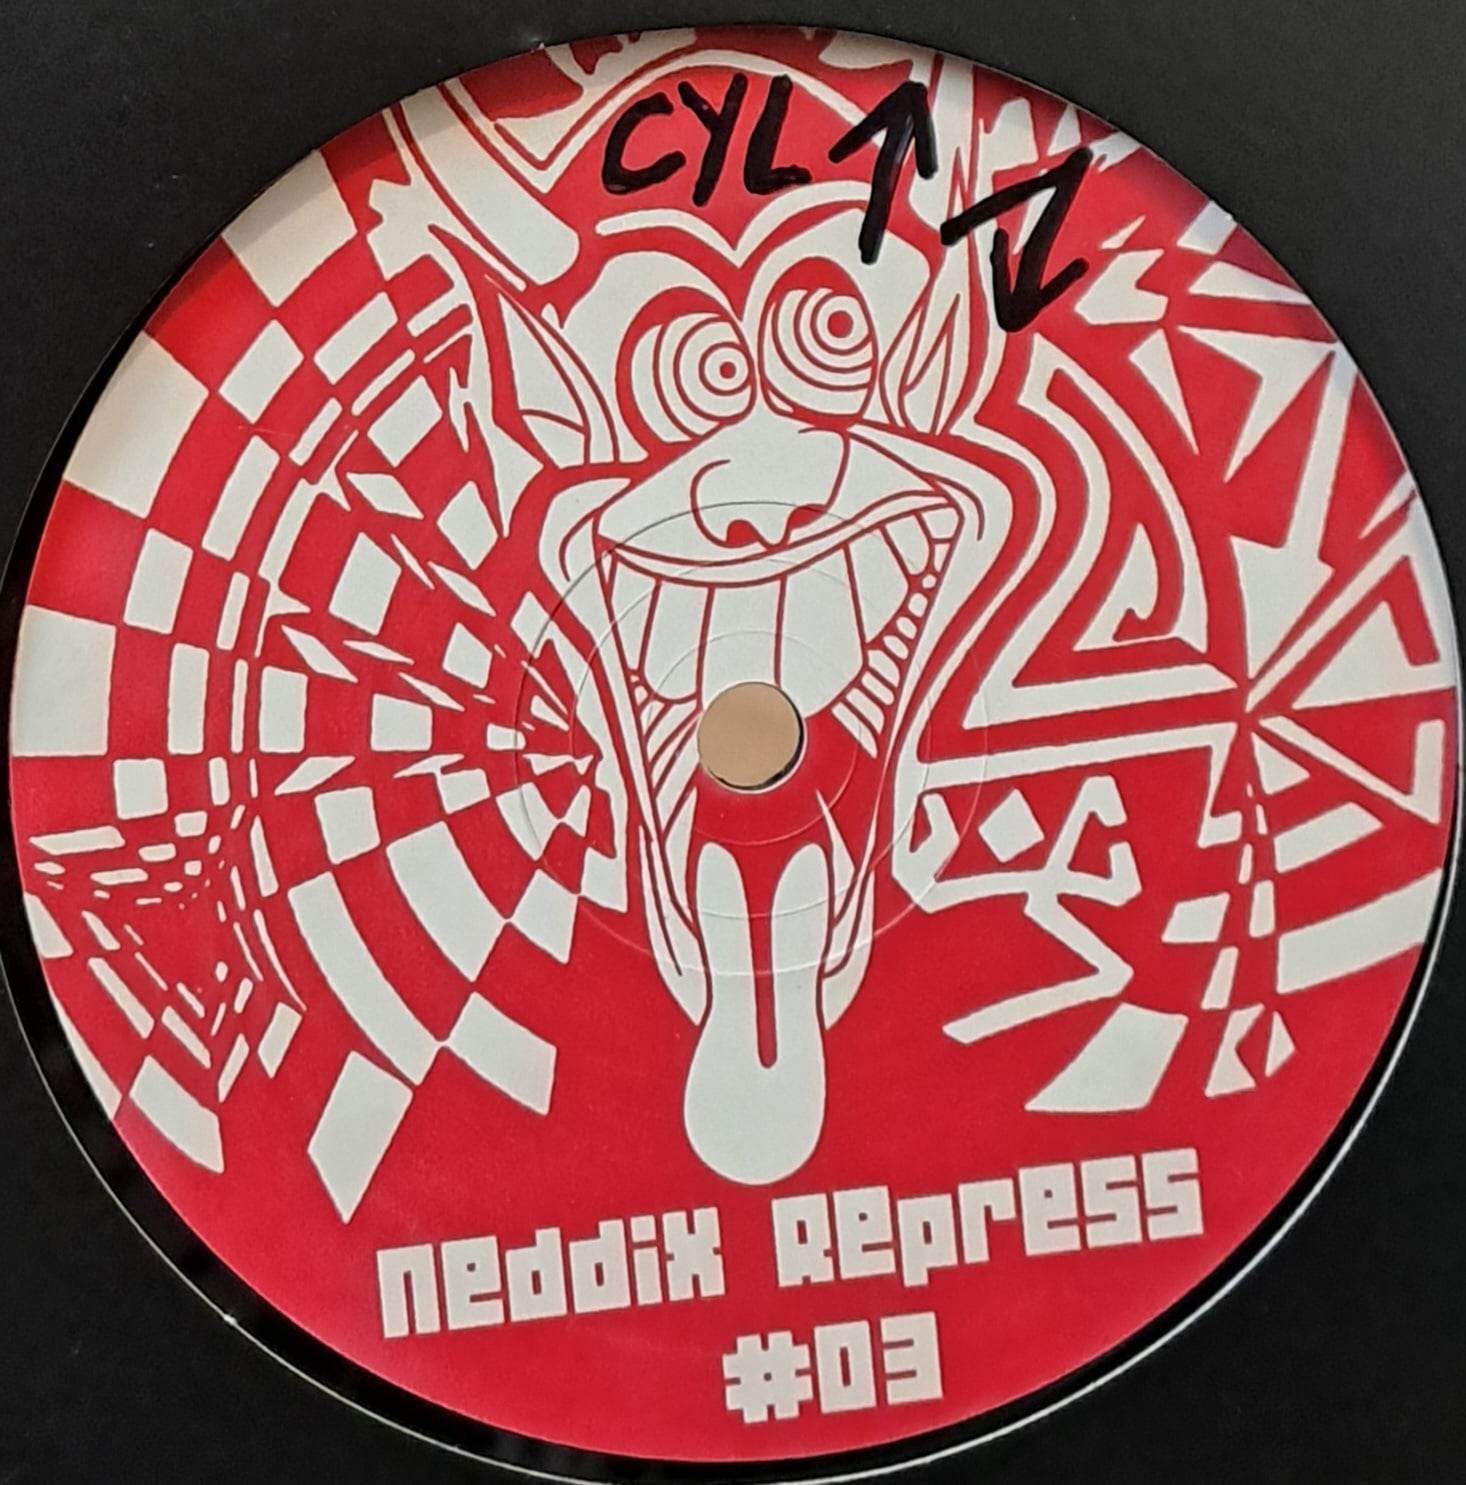 Neddix Repress 03 - vinyle freetekno